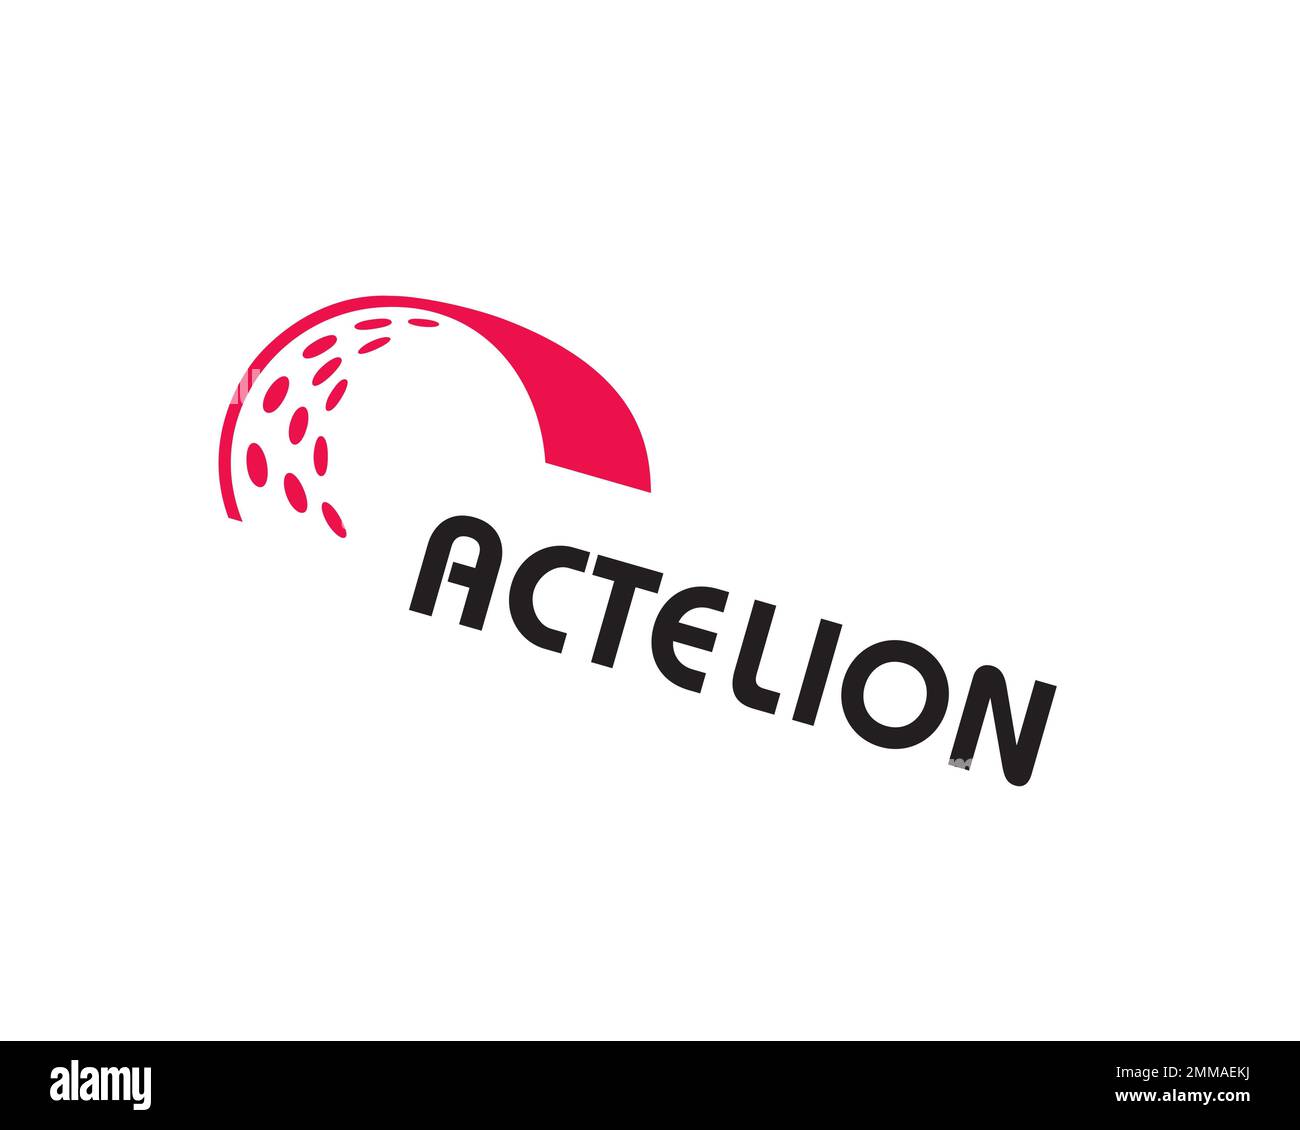 Actelion, rotated, white background, logo, brand name Stock Photo